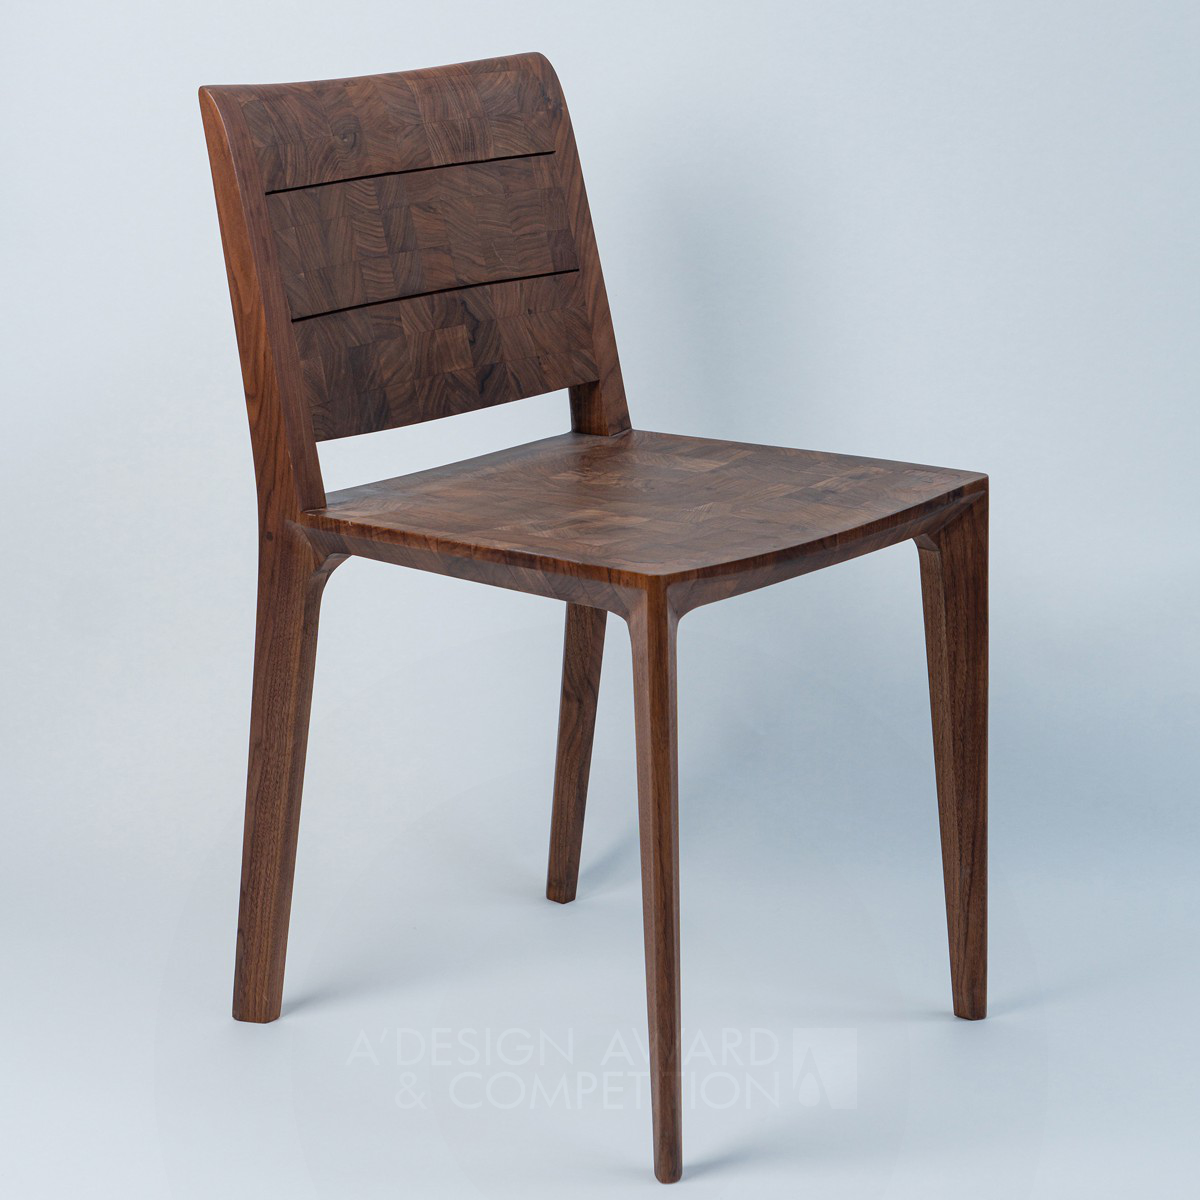 La sedia Promotion: un capolavoro di design minimalista